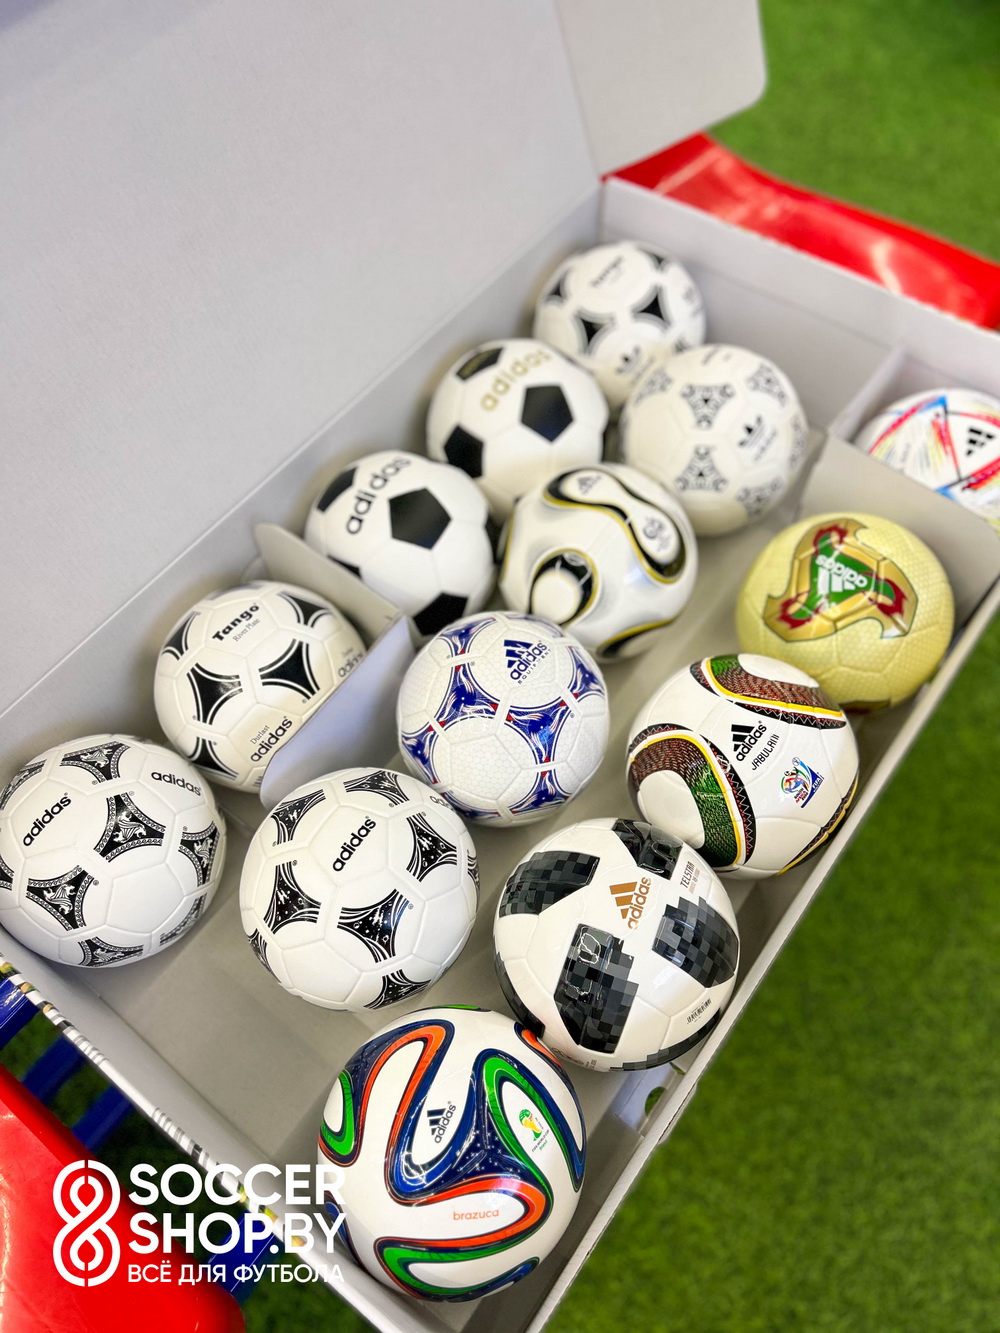 Сет сувенирных мячей Adidas с чемпионатов мира 